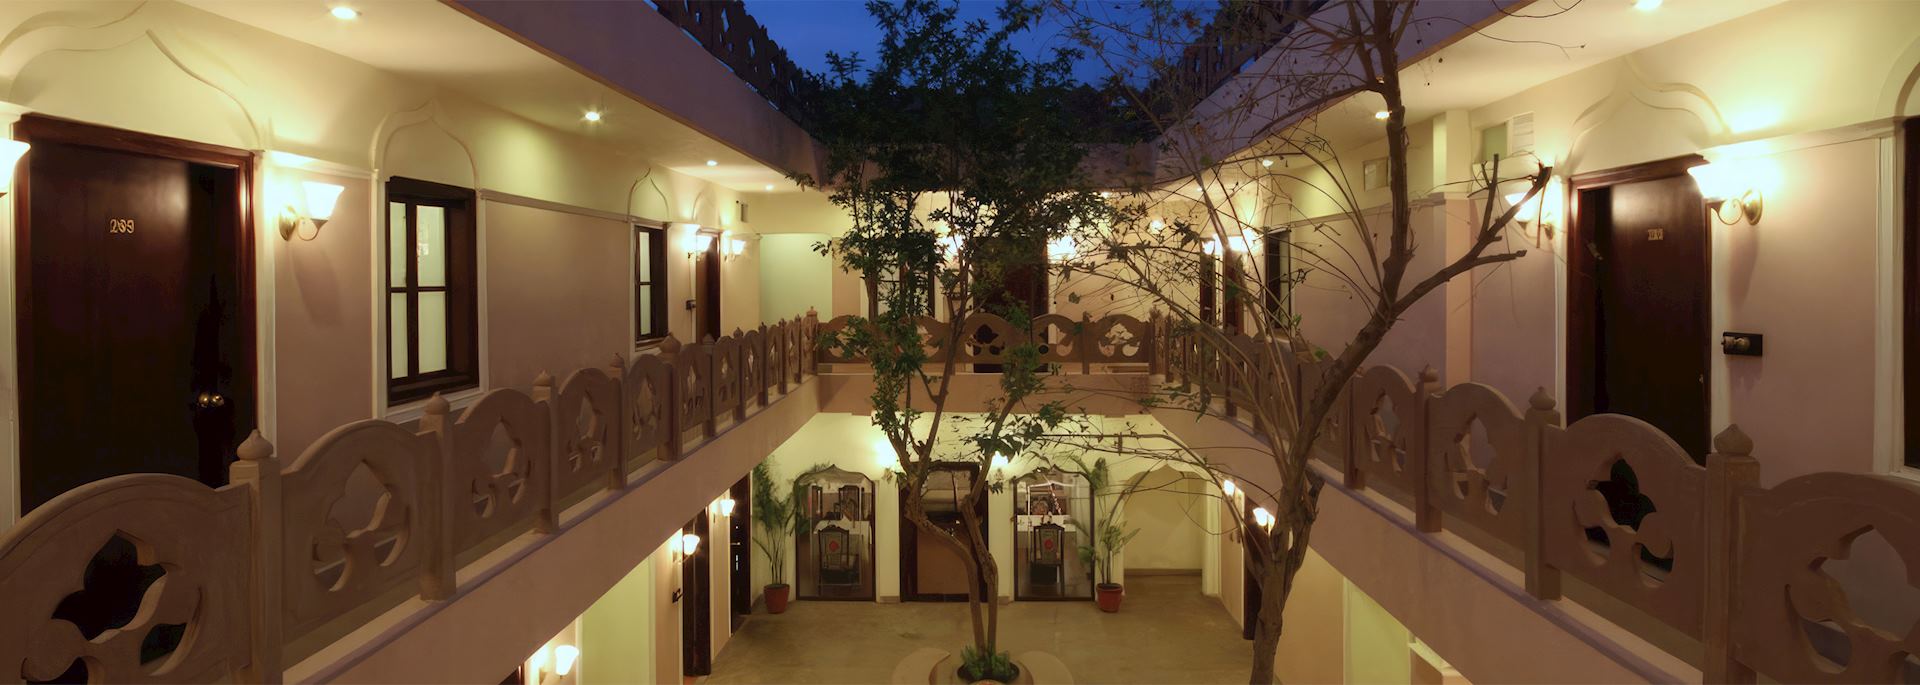 Courtyard at Suryauday Haveli, Varanasi